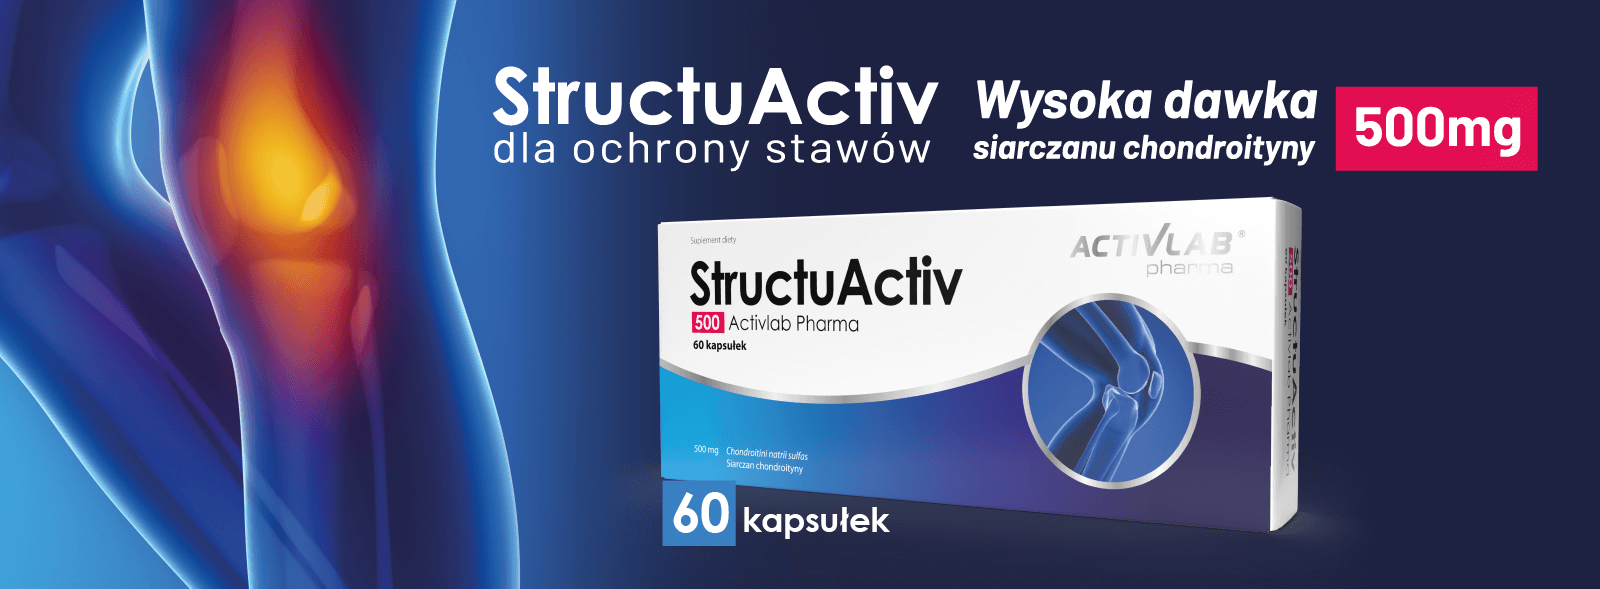 Structuactiv - 500 mg siarczanu chondroityny na kapsułkę